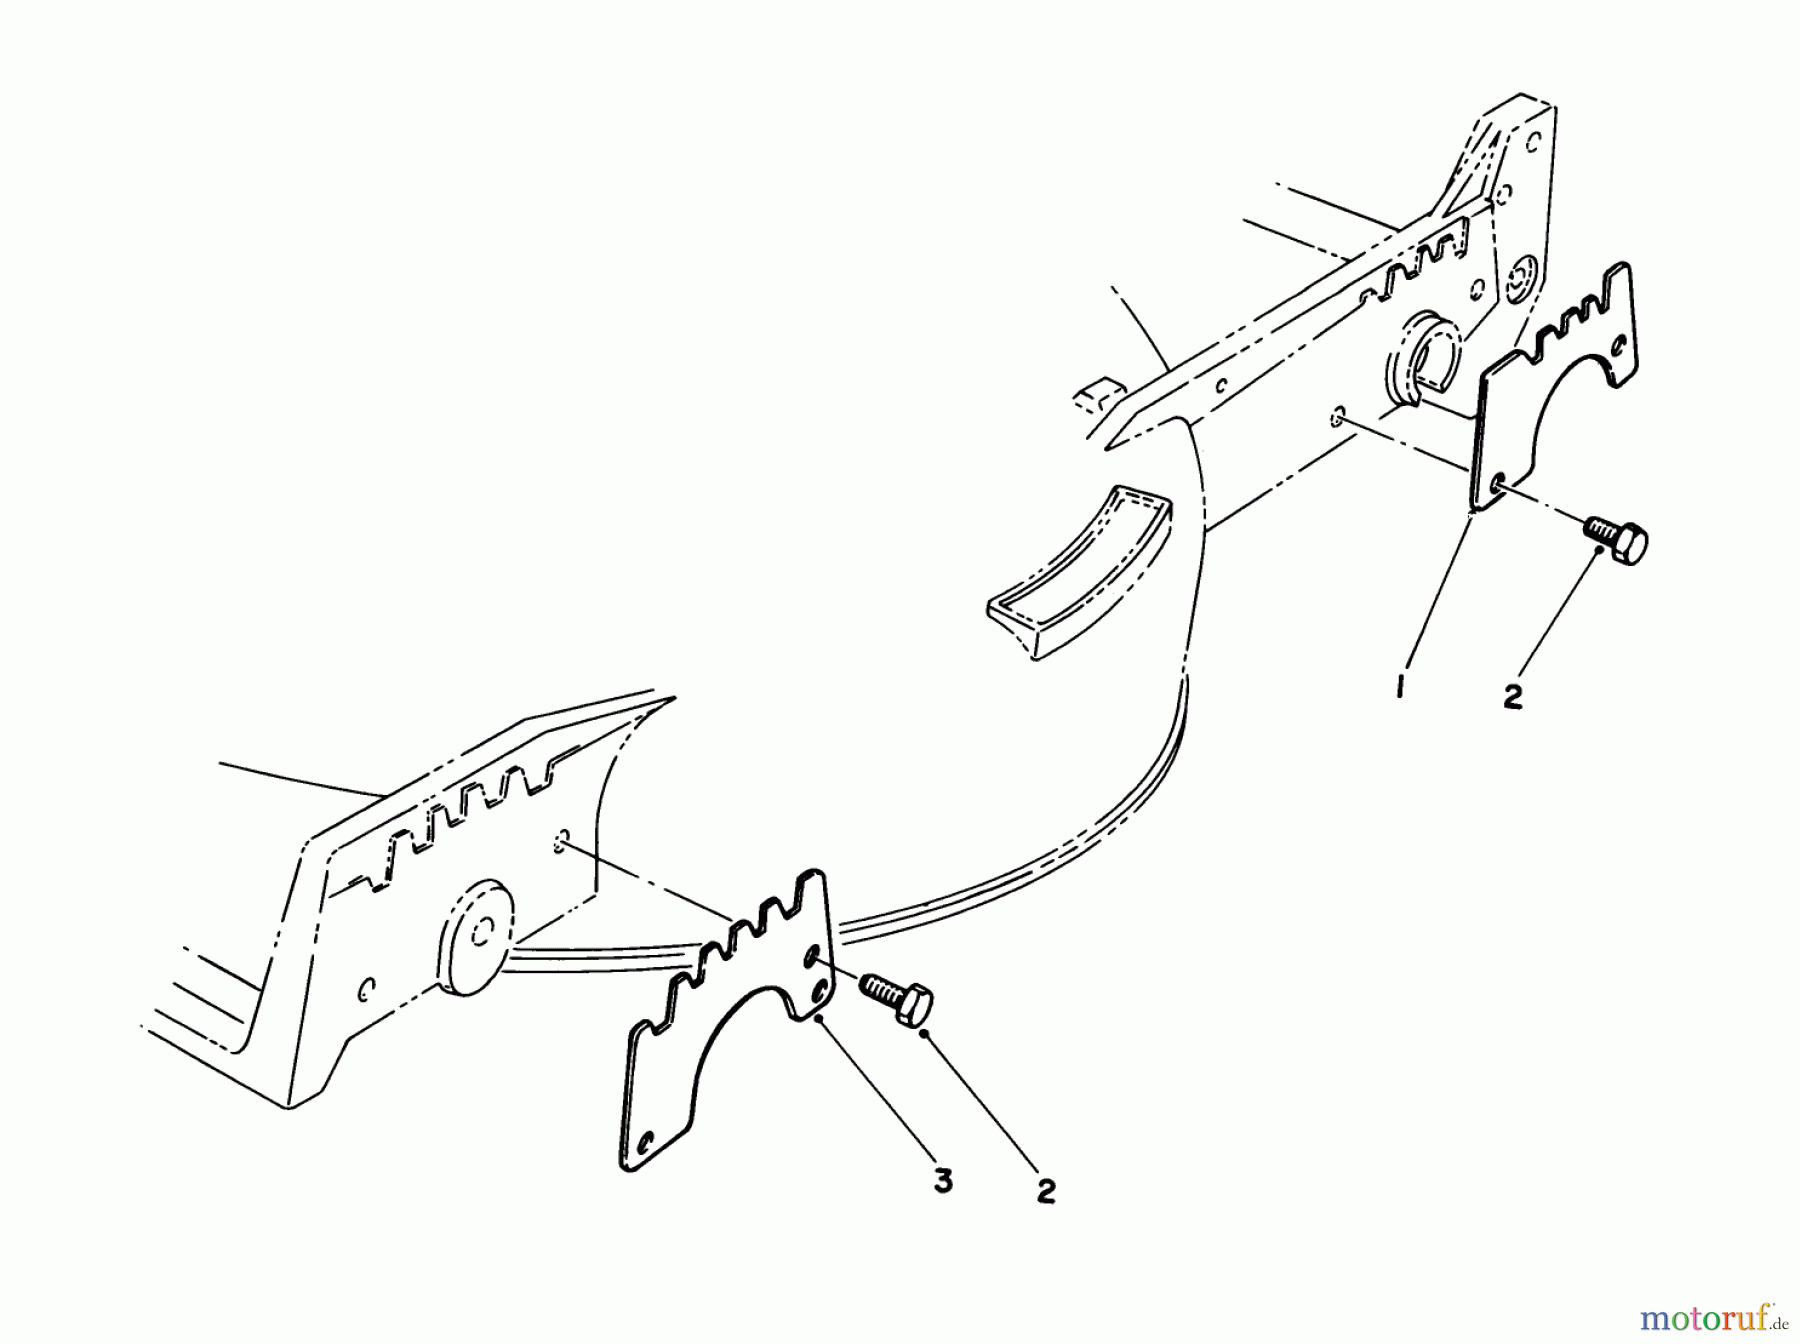  Toro Neu Mowers, Walk-Behind Seite 1 20631 - Toro Lawnmower, 1988 (8000001-8999999) WEAR PLATE KIT NO. 49-4080 (OPTIONAL)